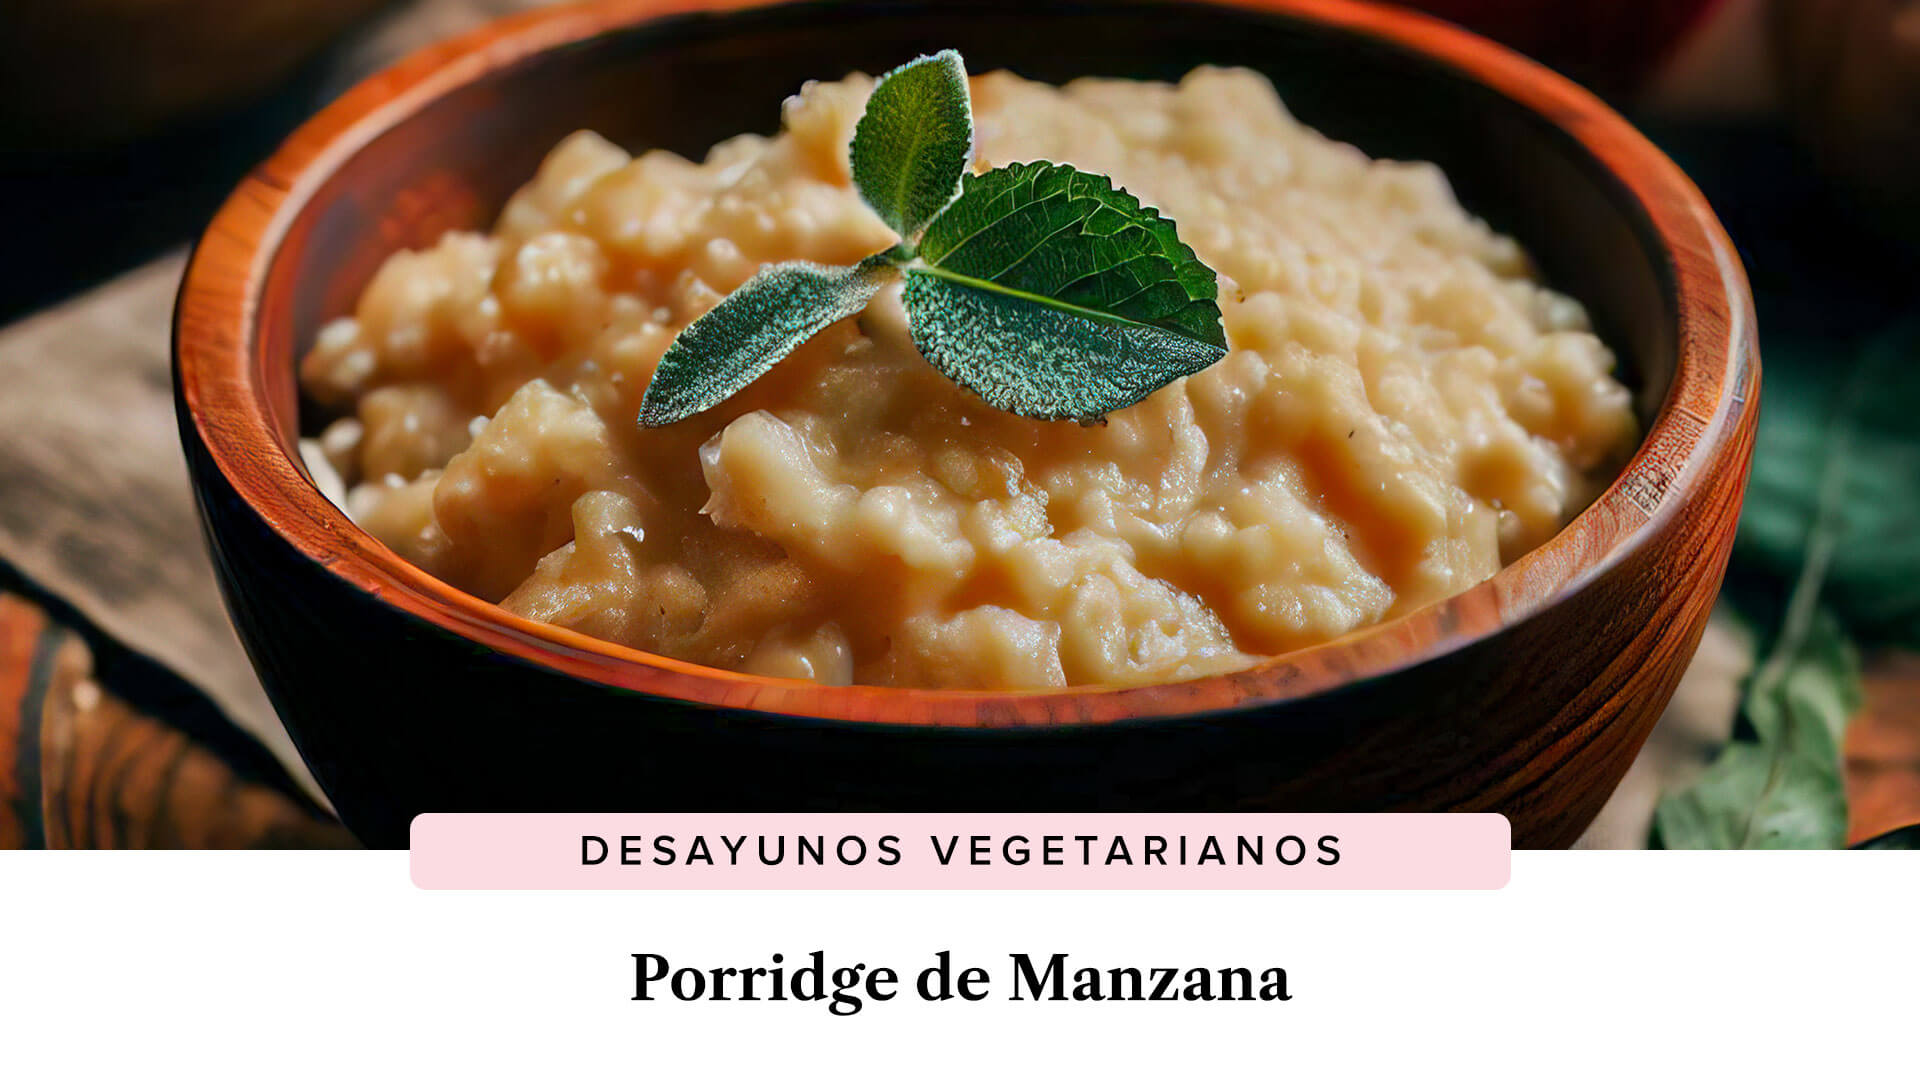 Porridge de Manzana